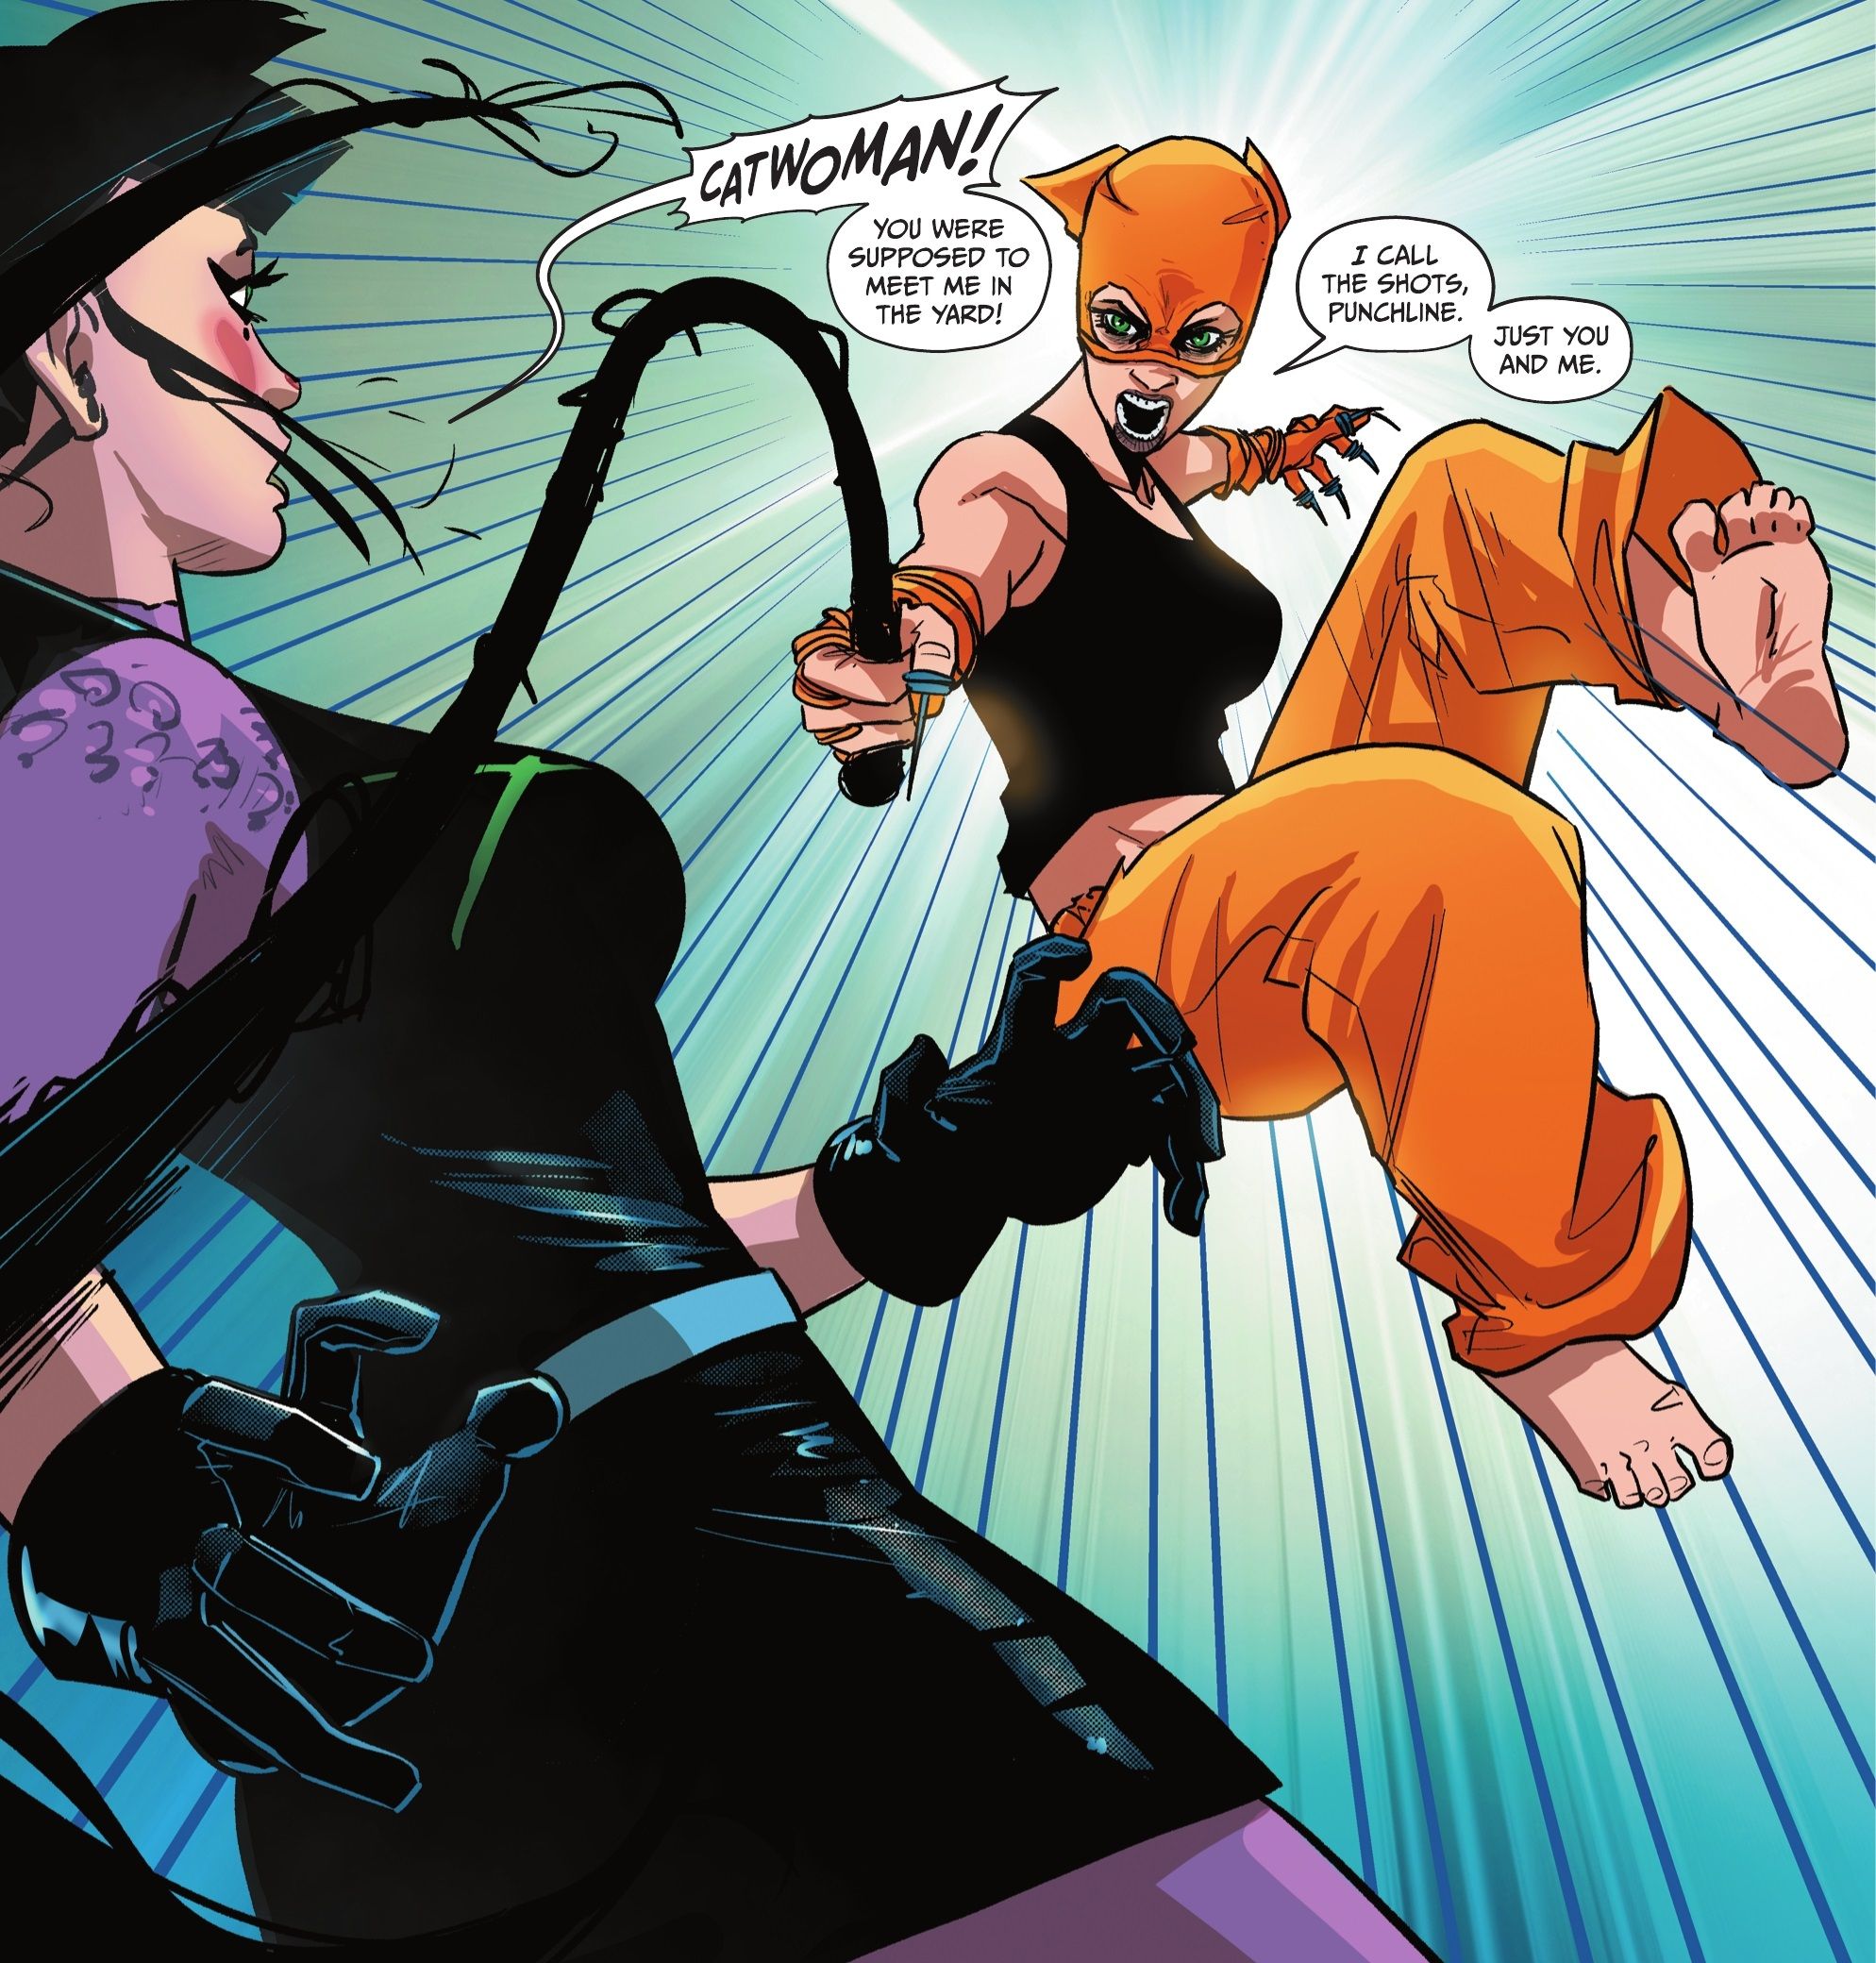 Catwoman luta Punchline, usando um chicote improvisado e fantasia